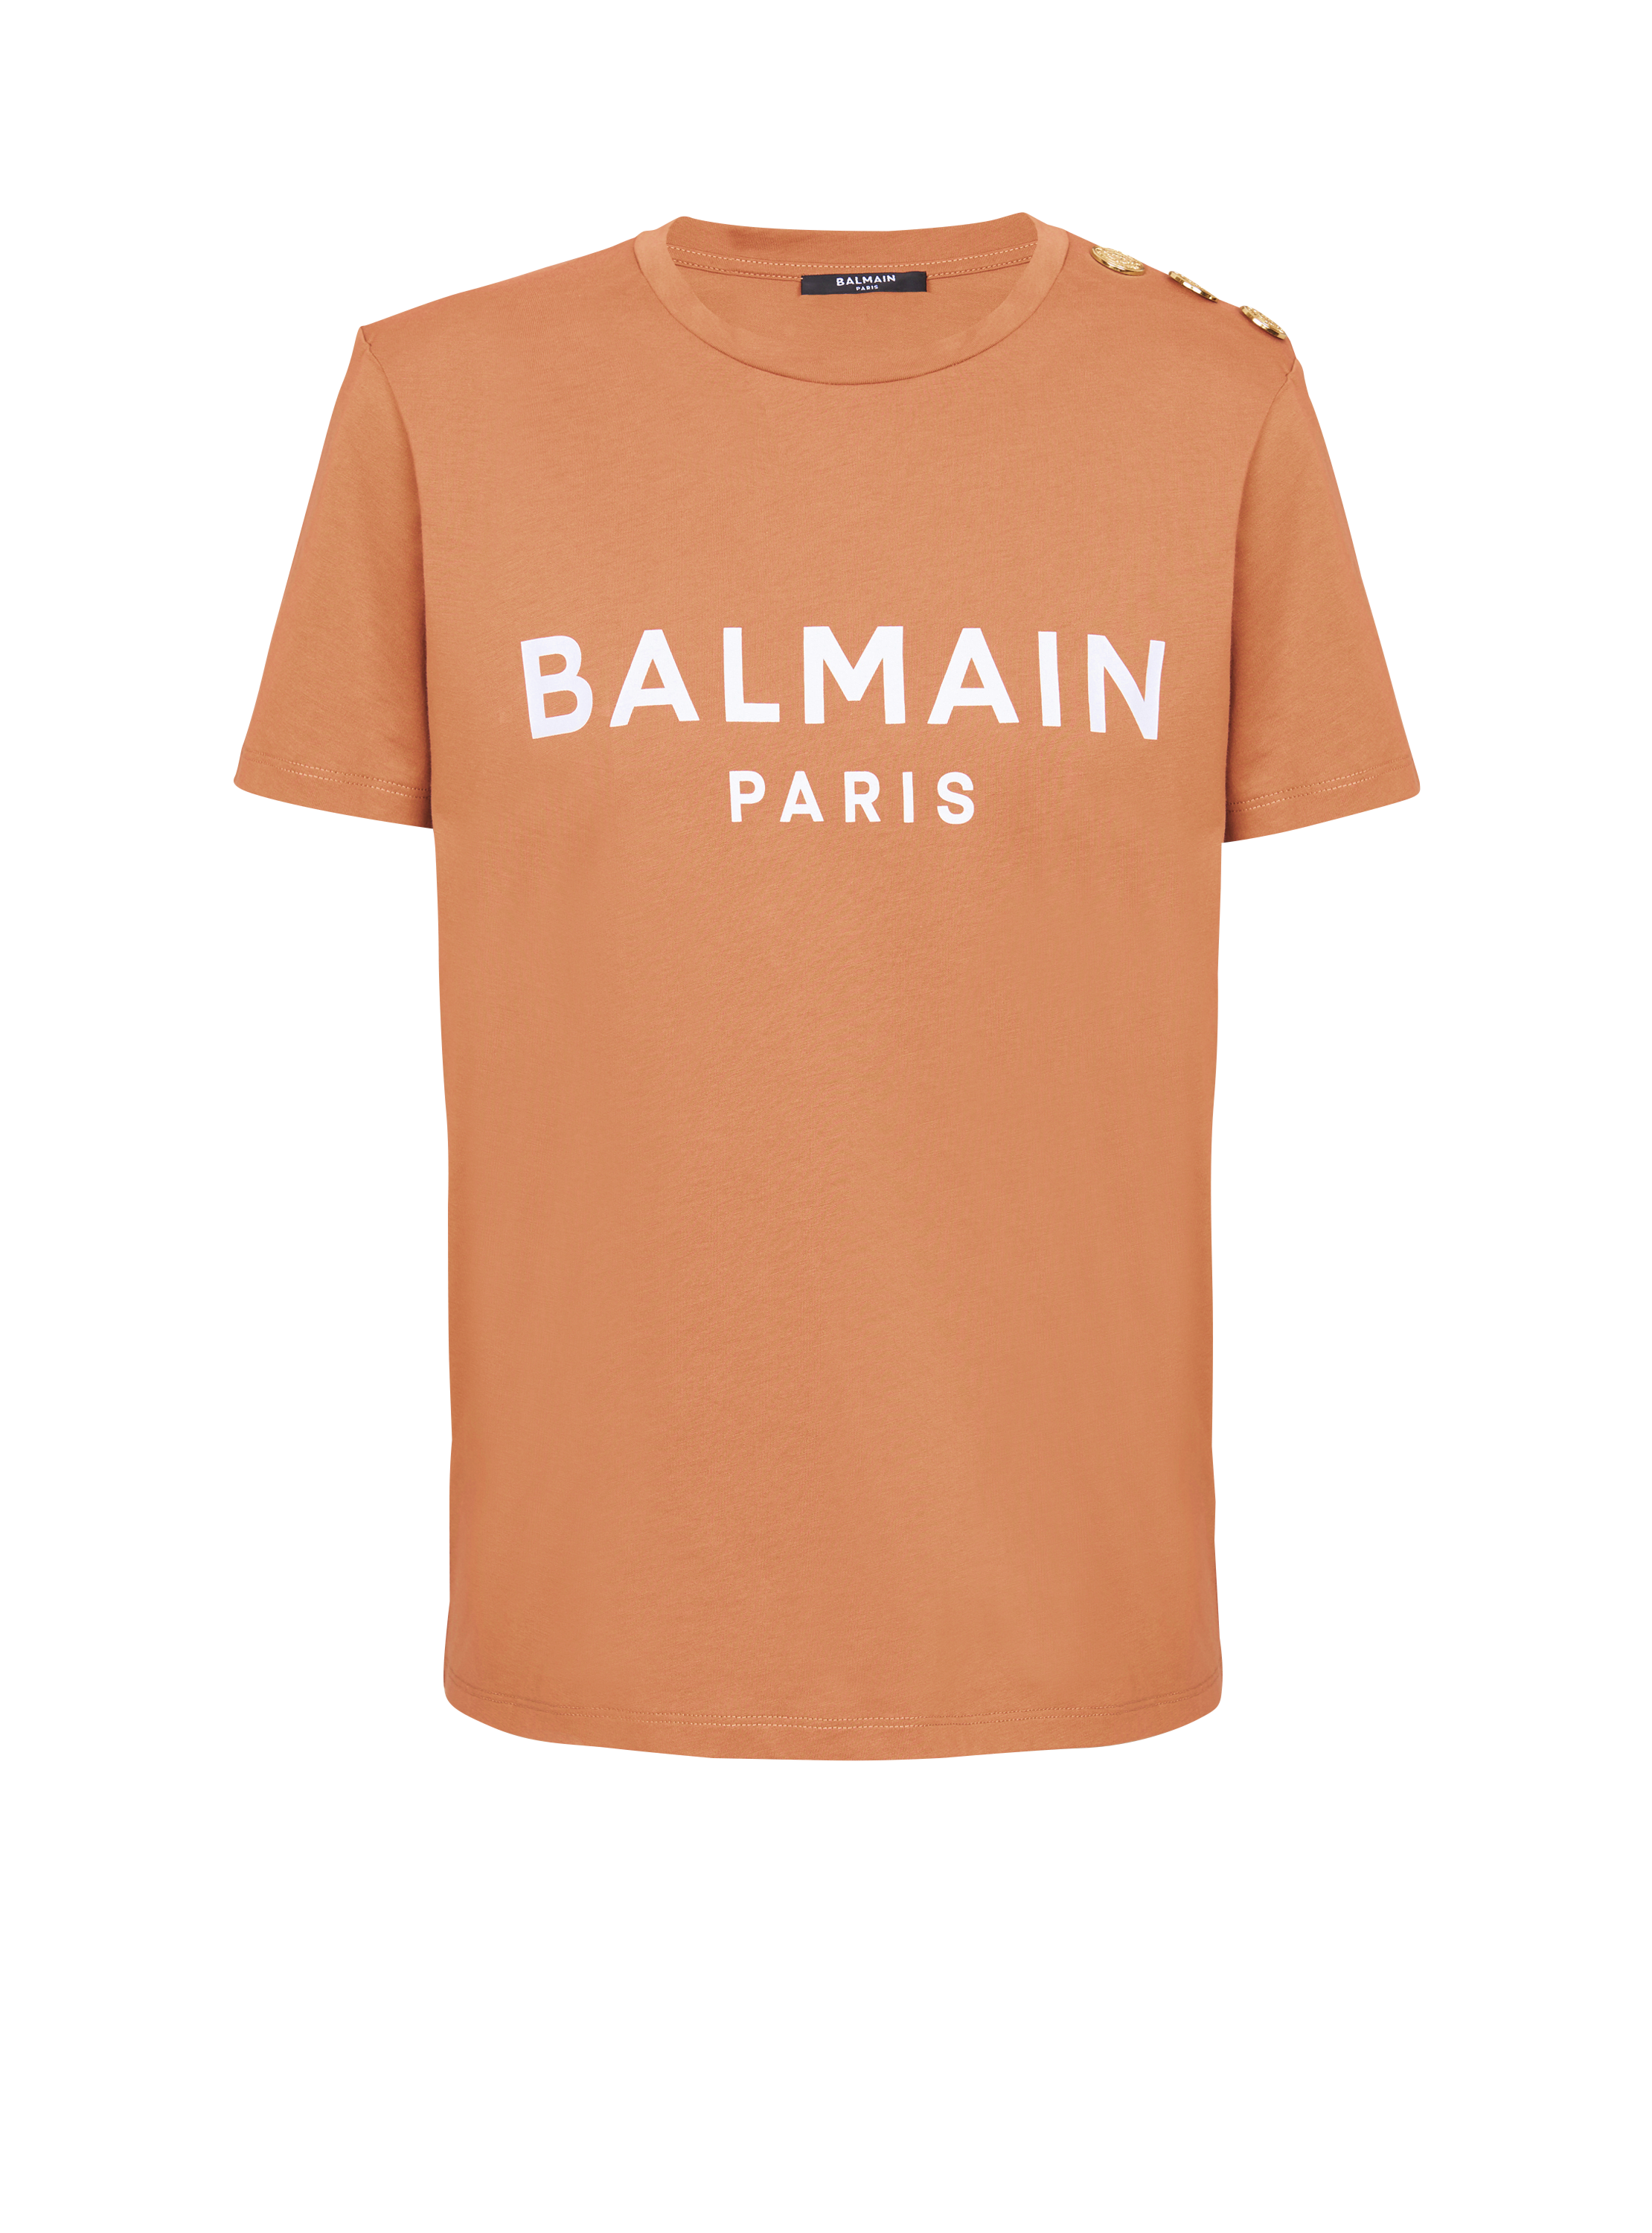 Camiseta con botones y logotipo de Balmain estampado, marrón, hi-res